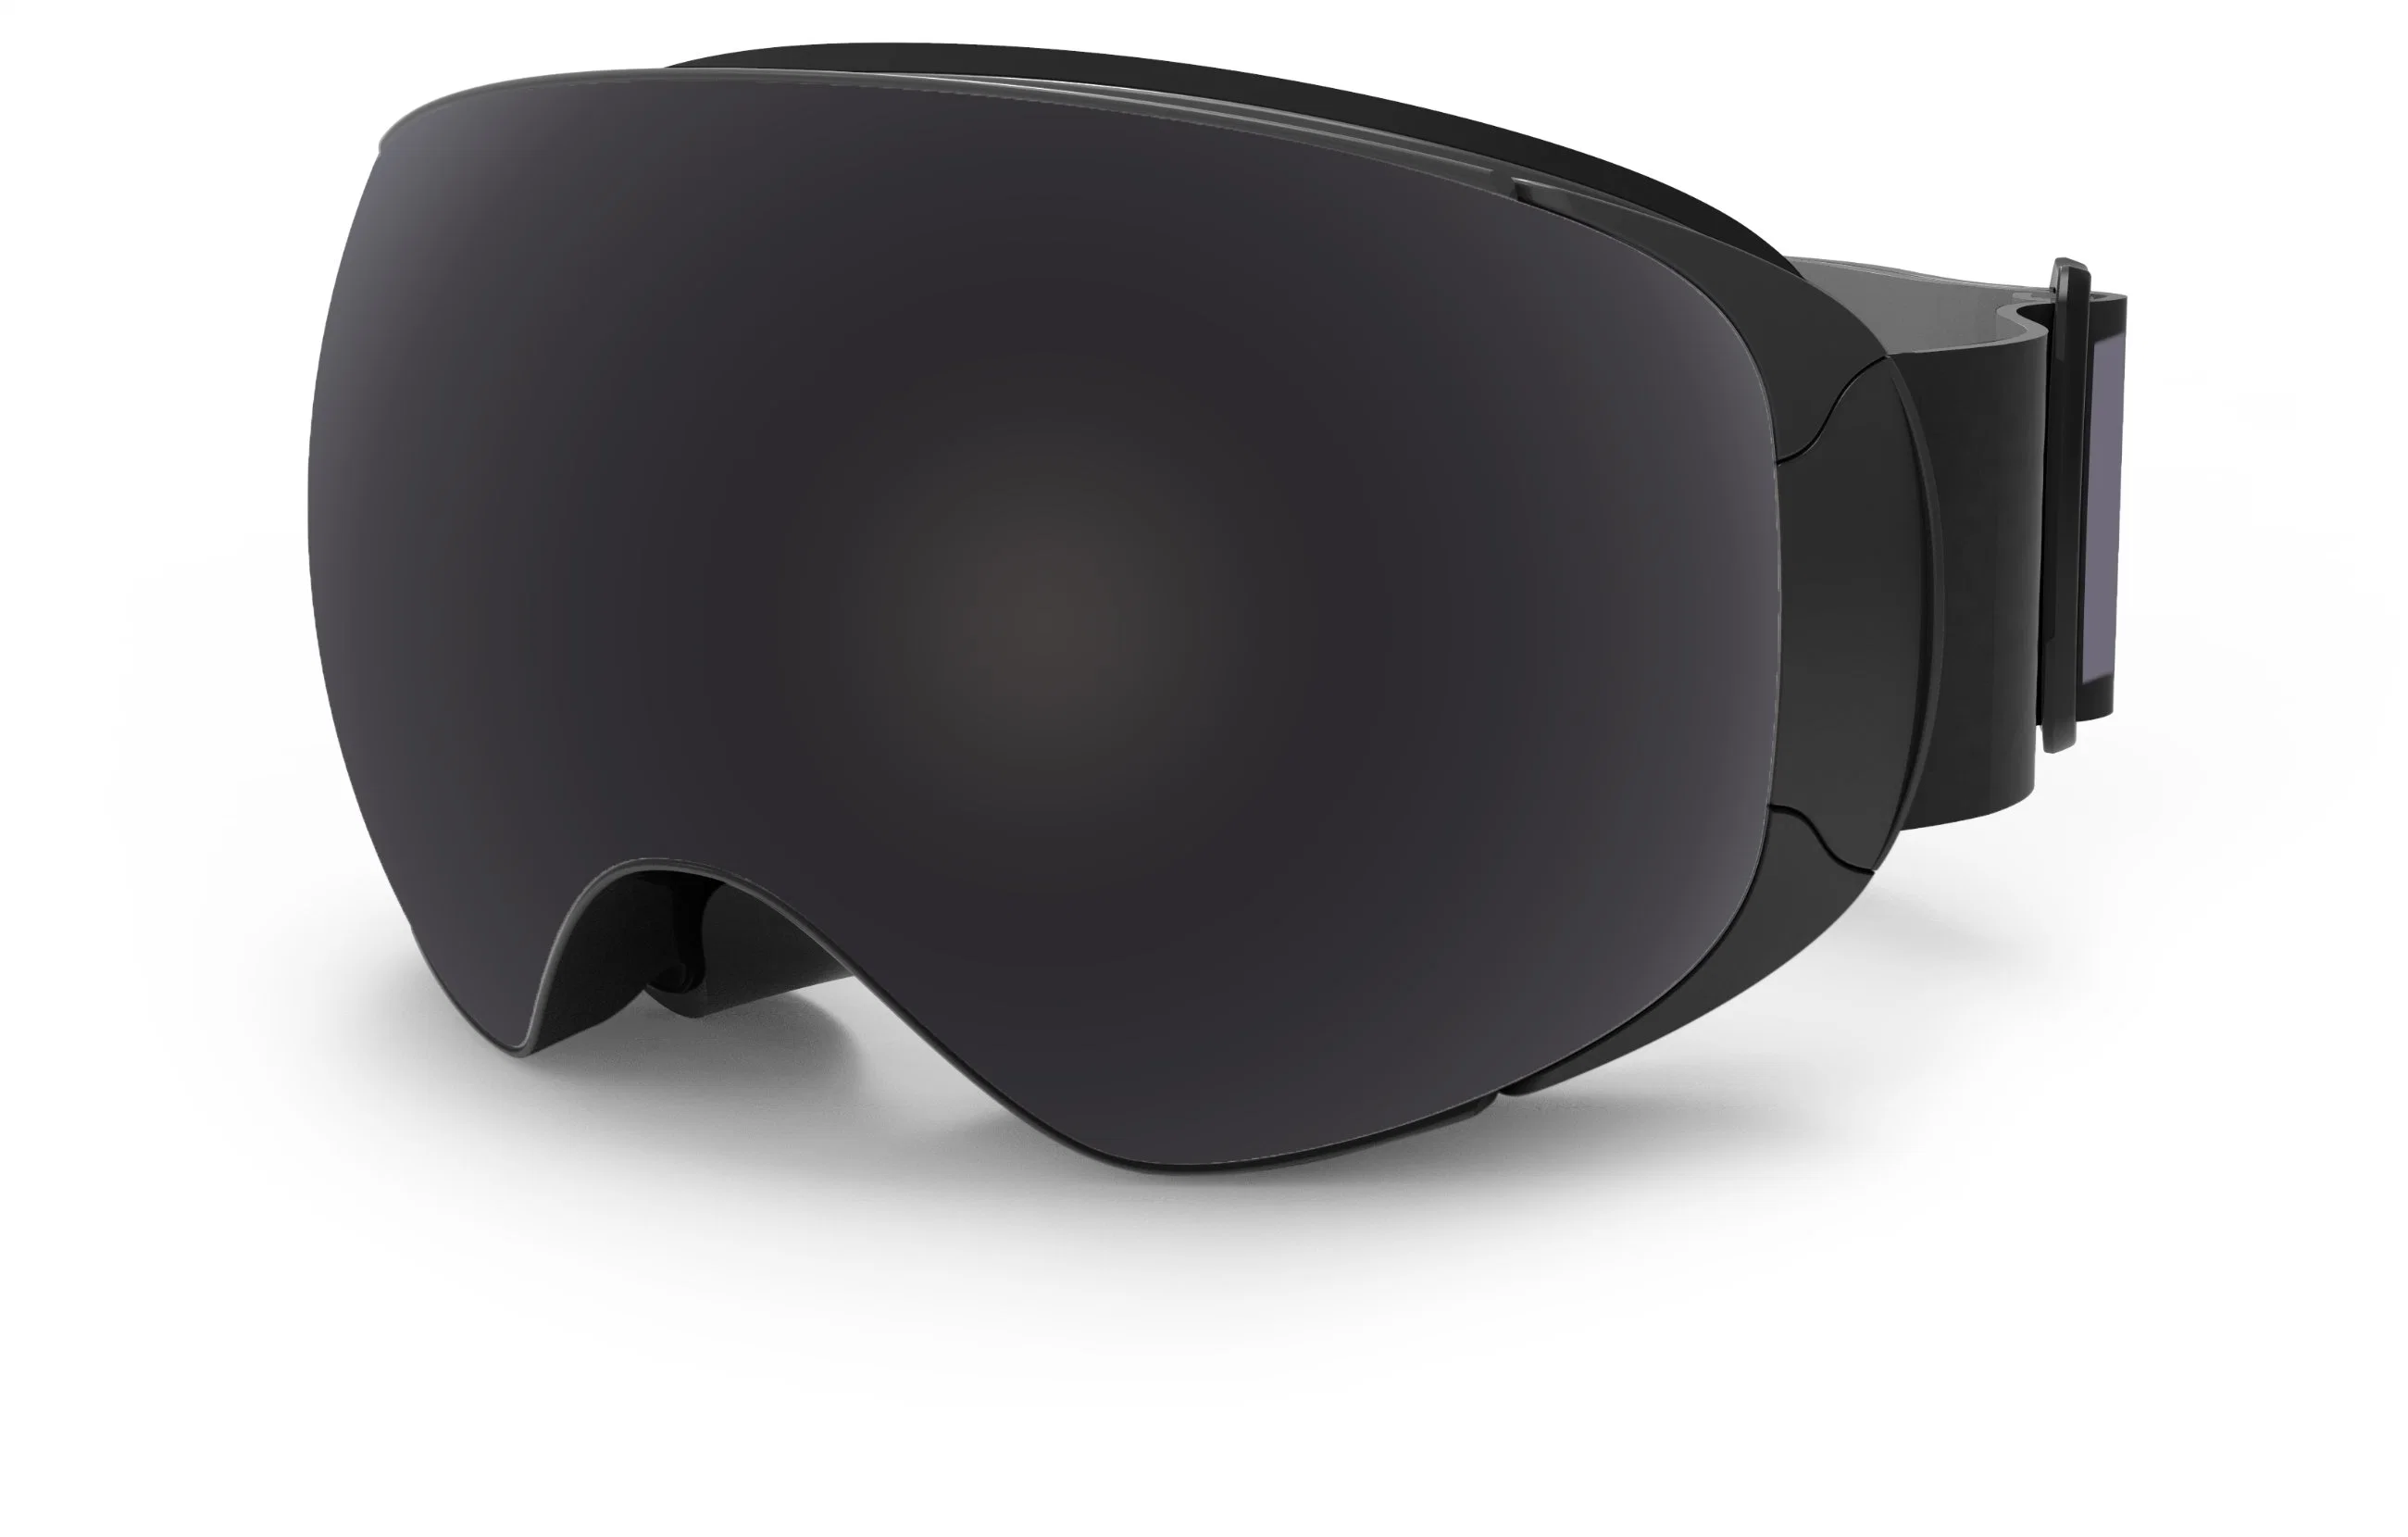 Diseño de Moda 2019 Amazon mejor venta de gafas de esquí libre de niebla sin cerco FDA aprobó sin niebla Snowboard Gafas de seguridad refleja la máscara de esquí